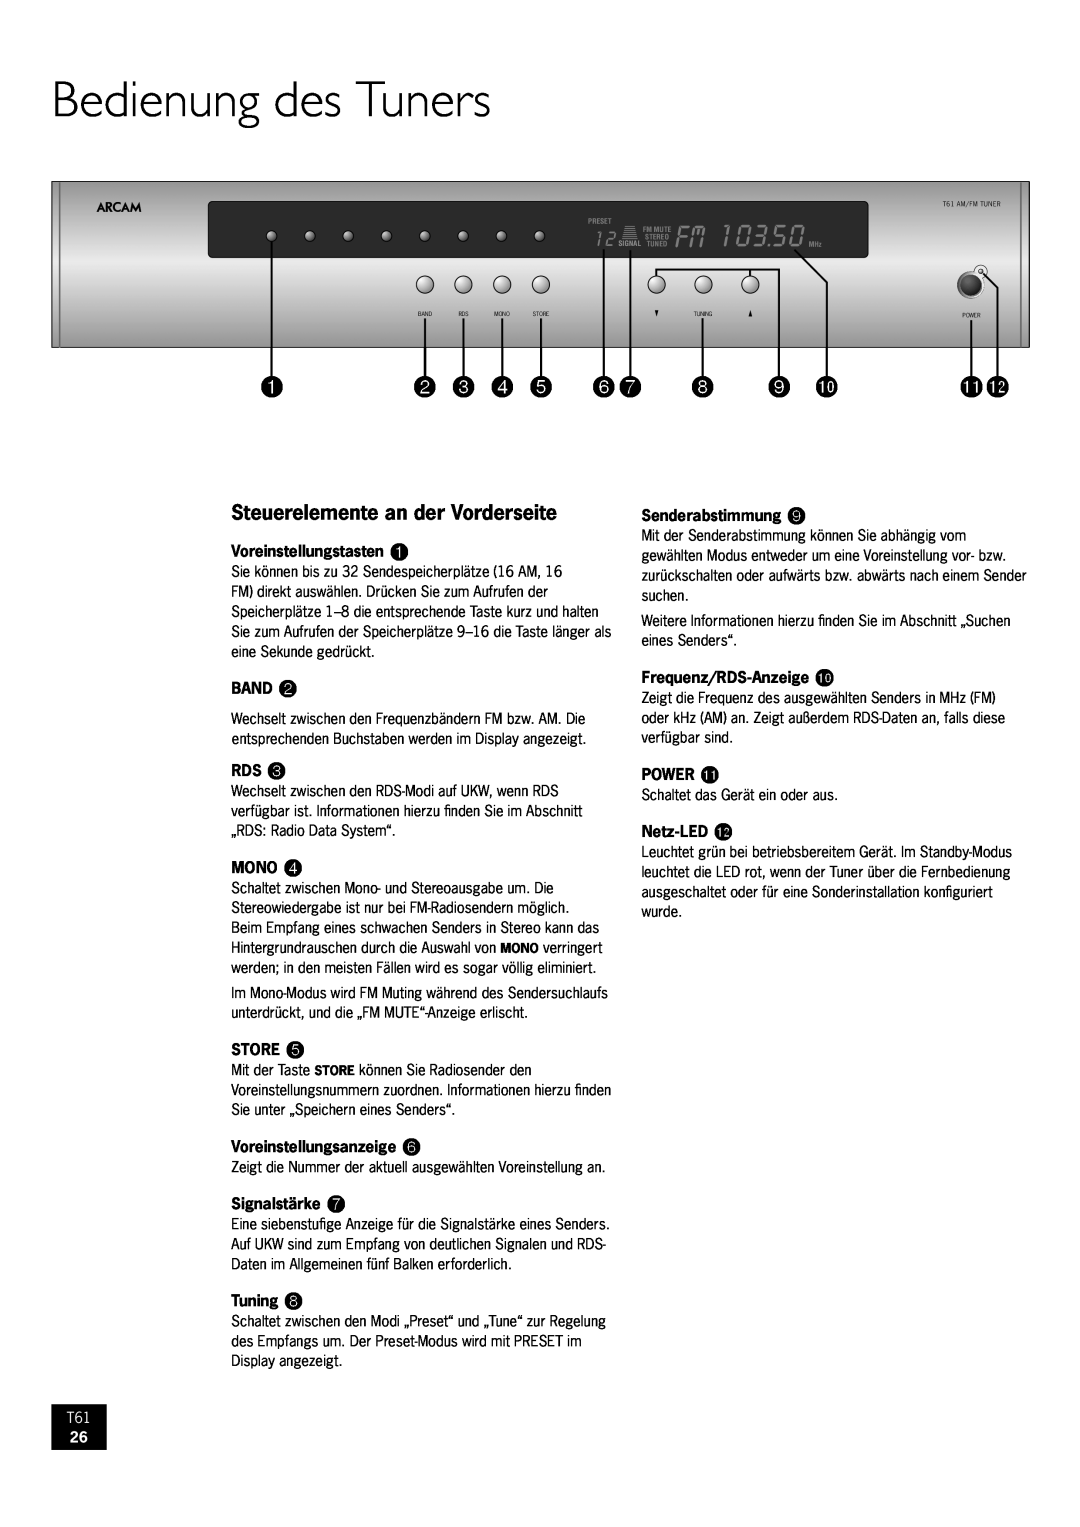 Arcam AM/FM Tuner T61 manual Bedienung des Tuners, Steuerelemente an der Vorderseite, 9 bk, blbm, 103.50 MHz 